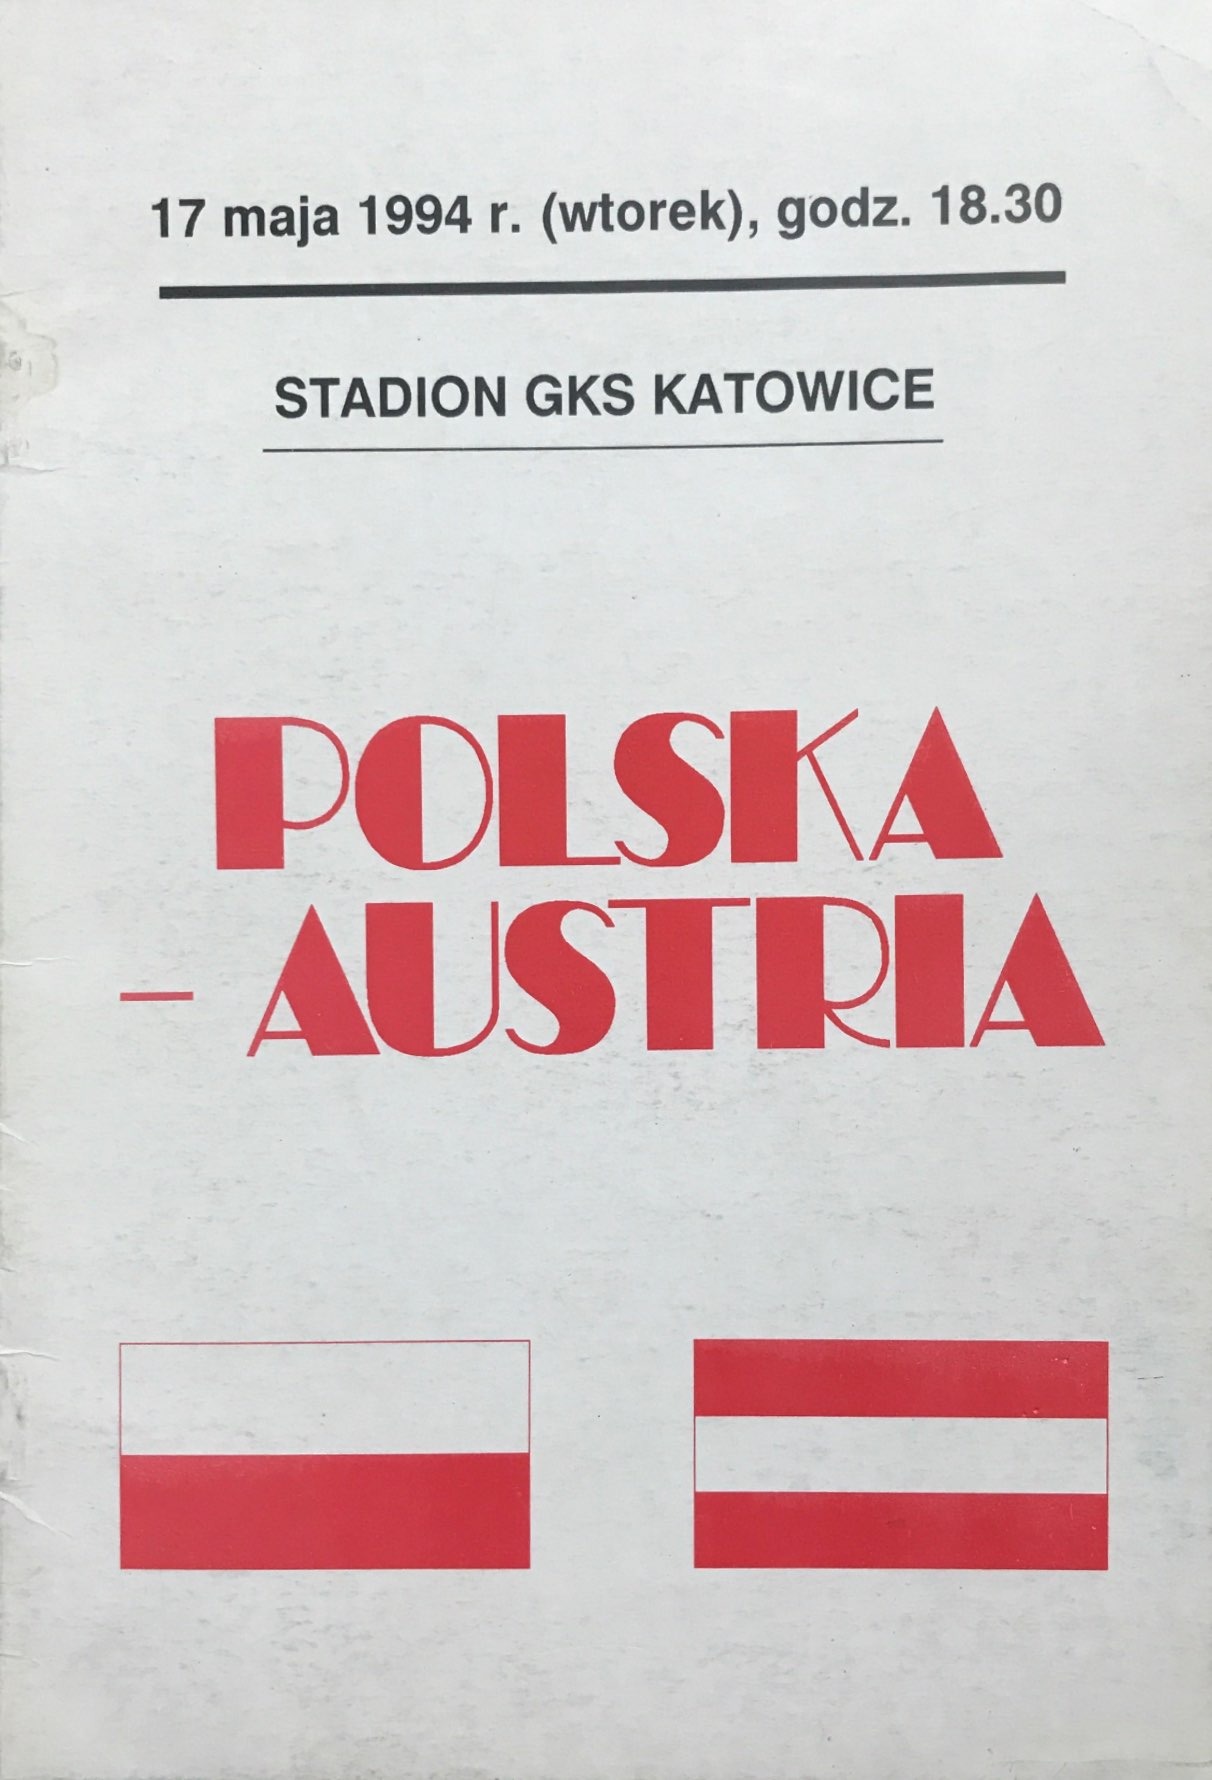 Program meczowy Polska - Austria 3:4 (17.05.1994).